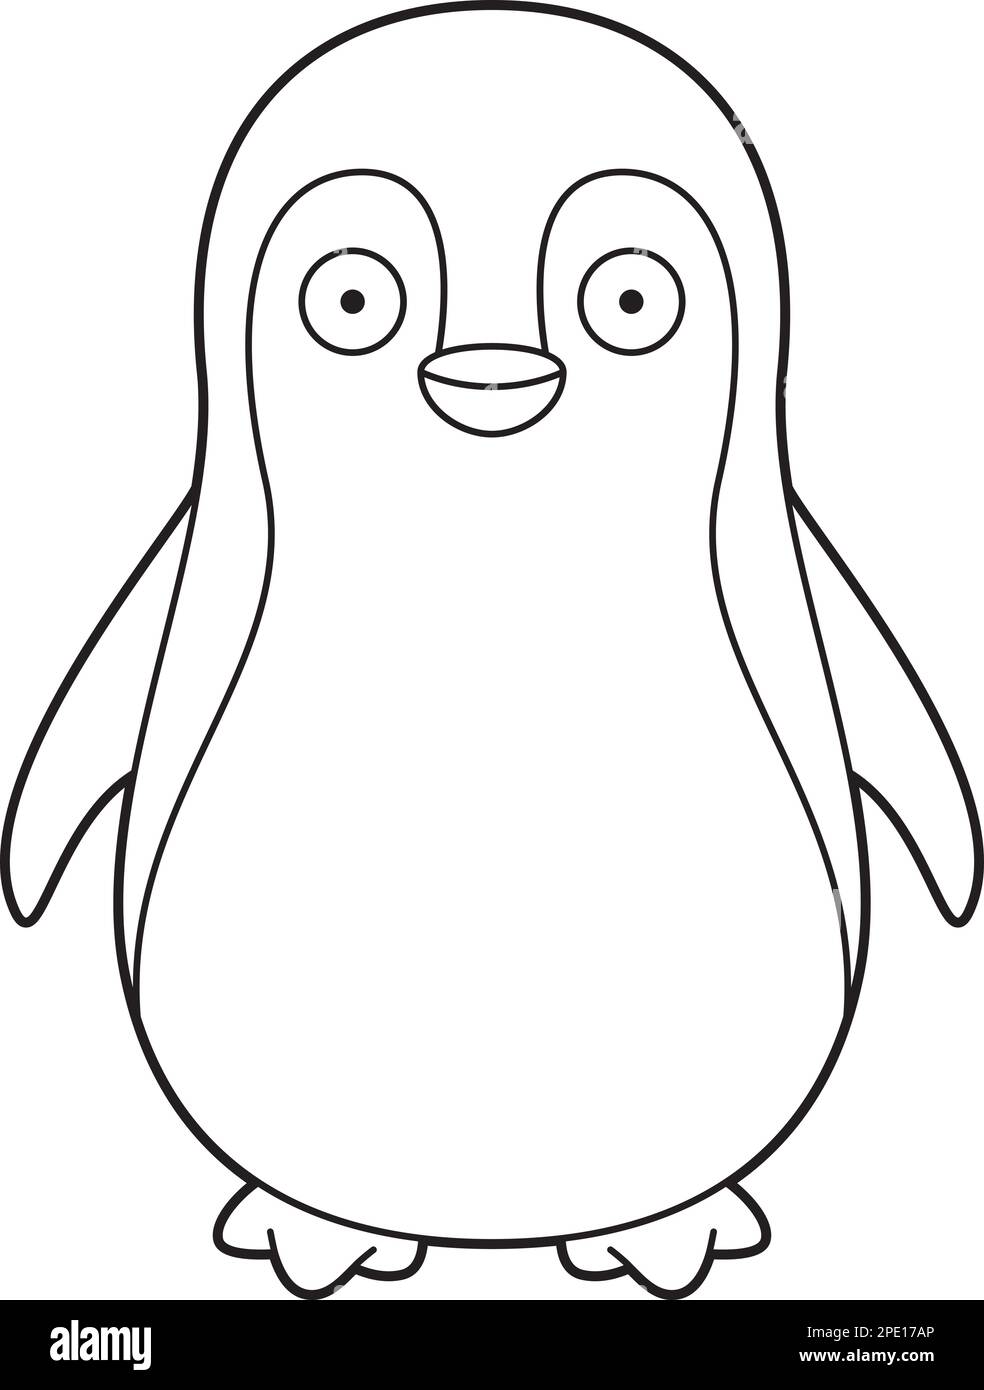 Disegno vettoriale di cartoni animati facile da colorare di un pinguino Illustrazione Vettoriale